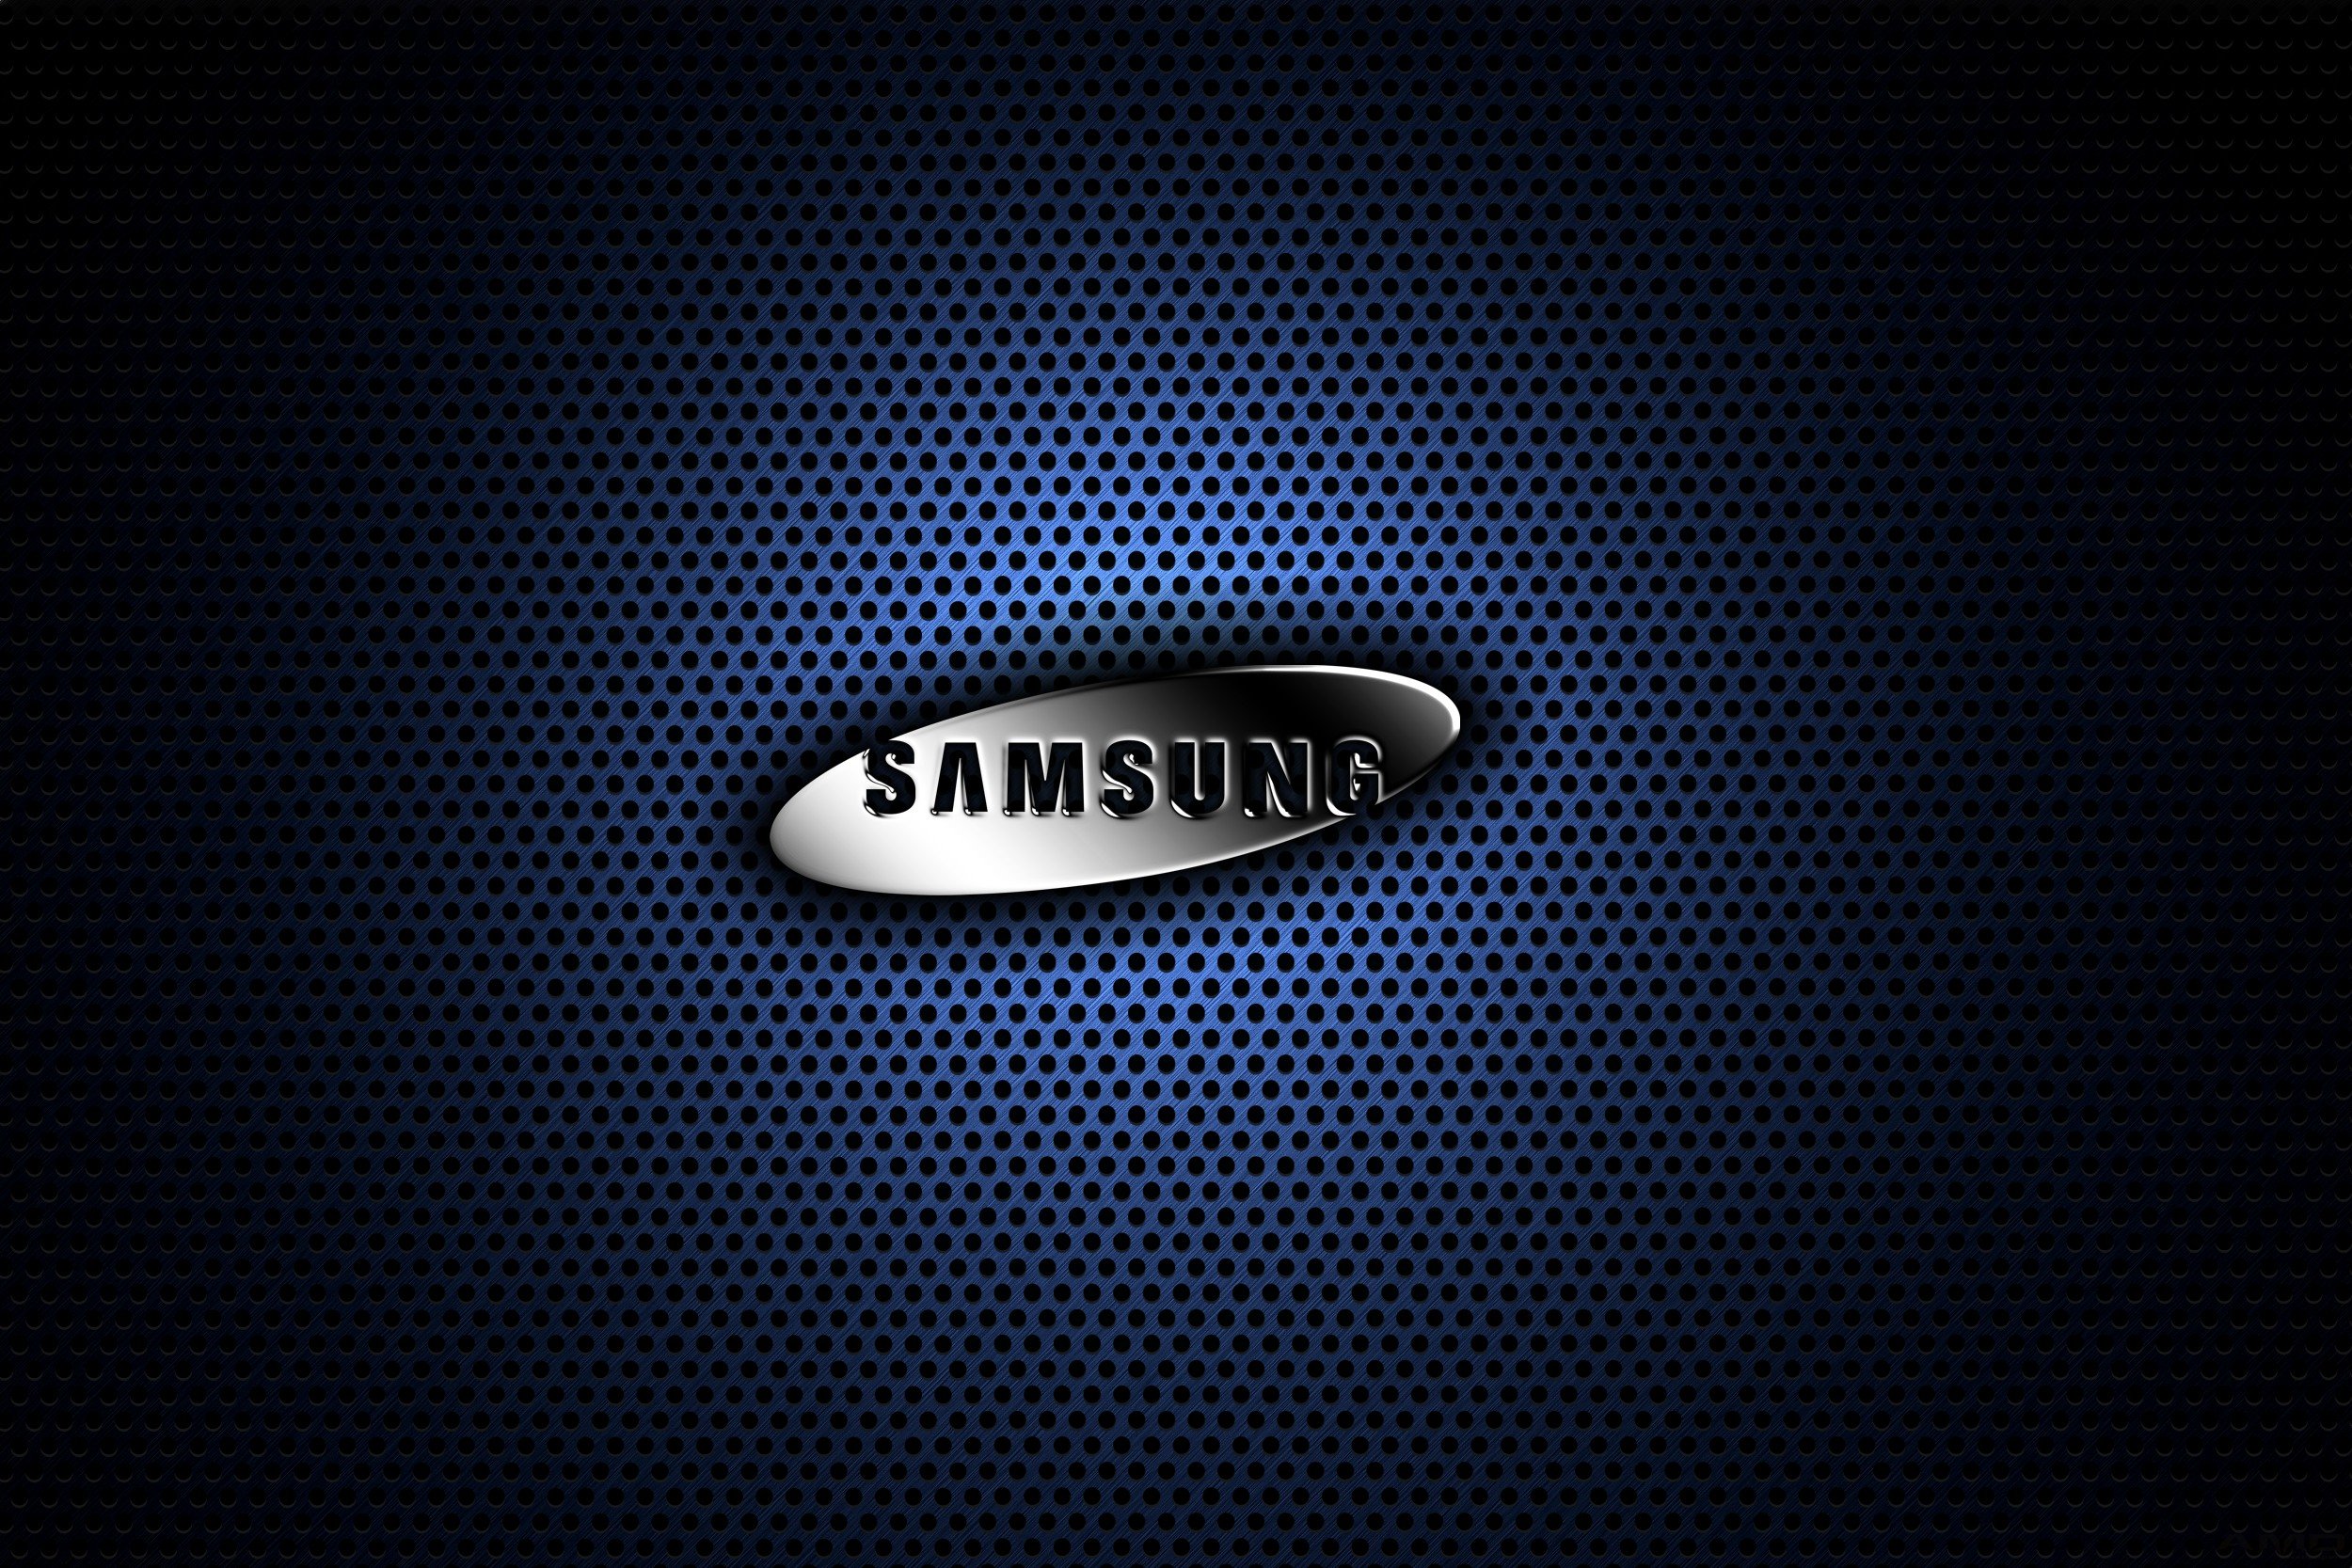 40+] Samsung HD Wallpapers 1080p - WallpaperSafari